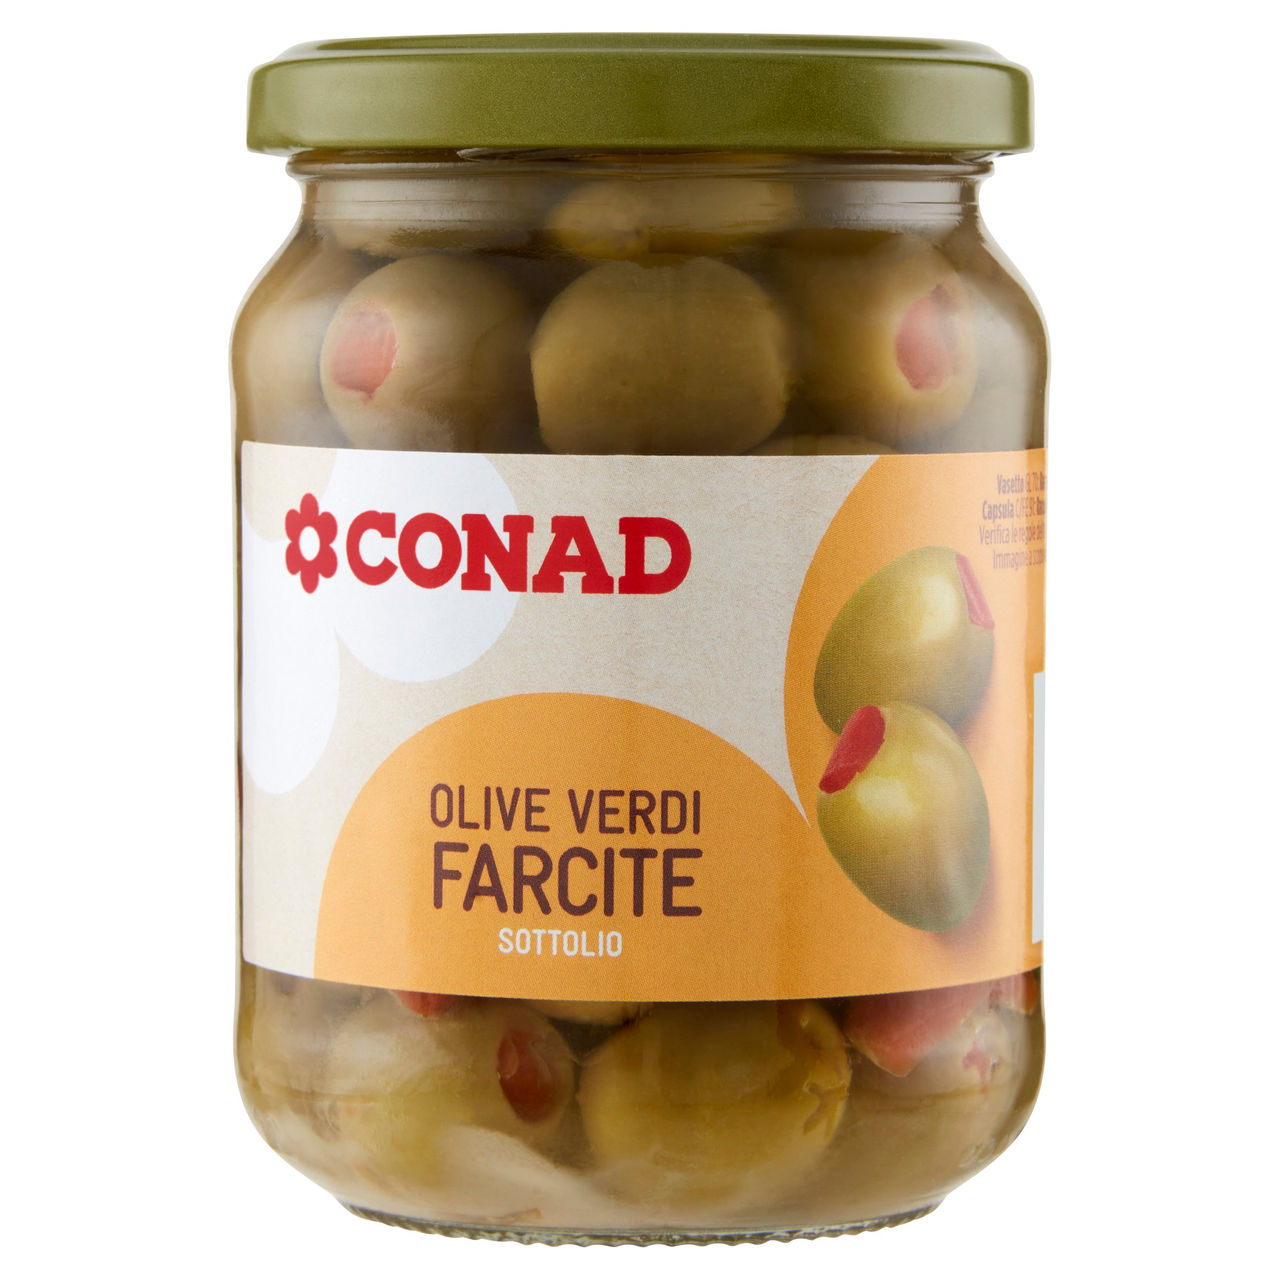 Olive Verdi Farcite Sottolio 285g Conad online